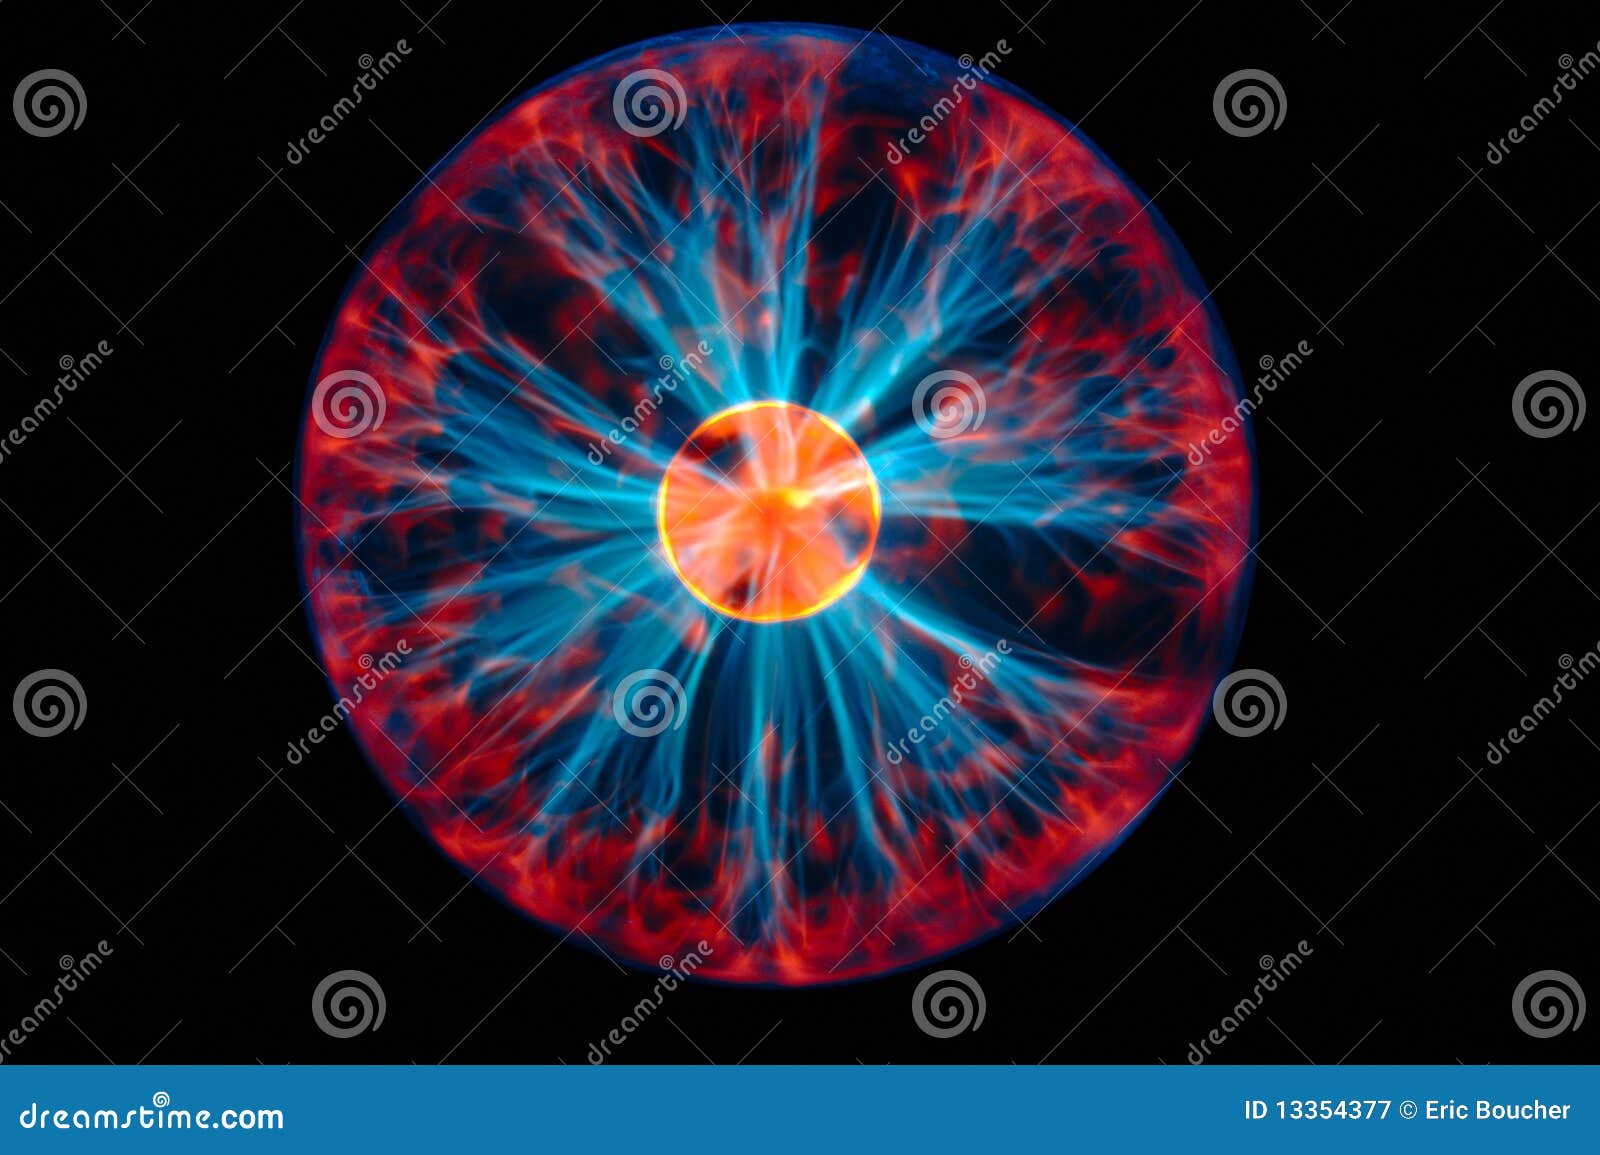 colorful plasma ball